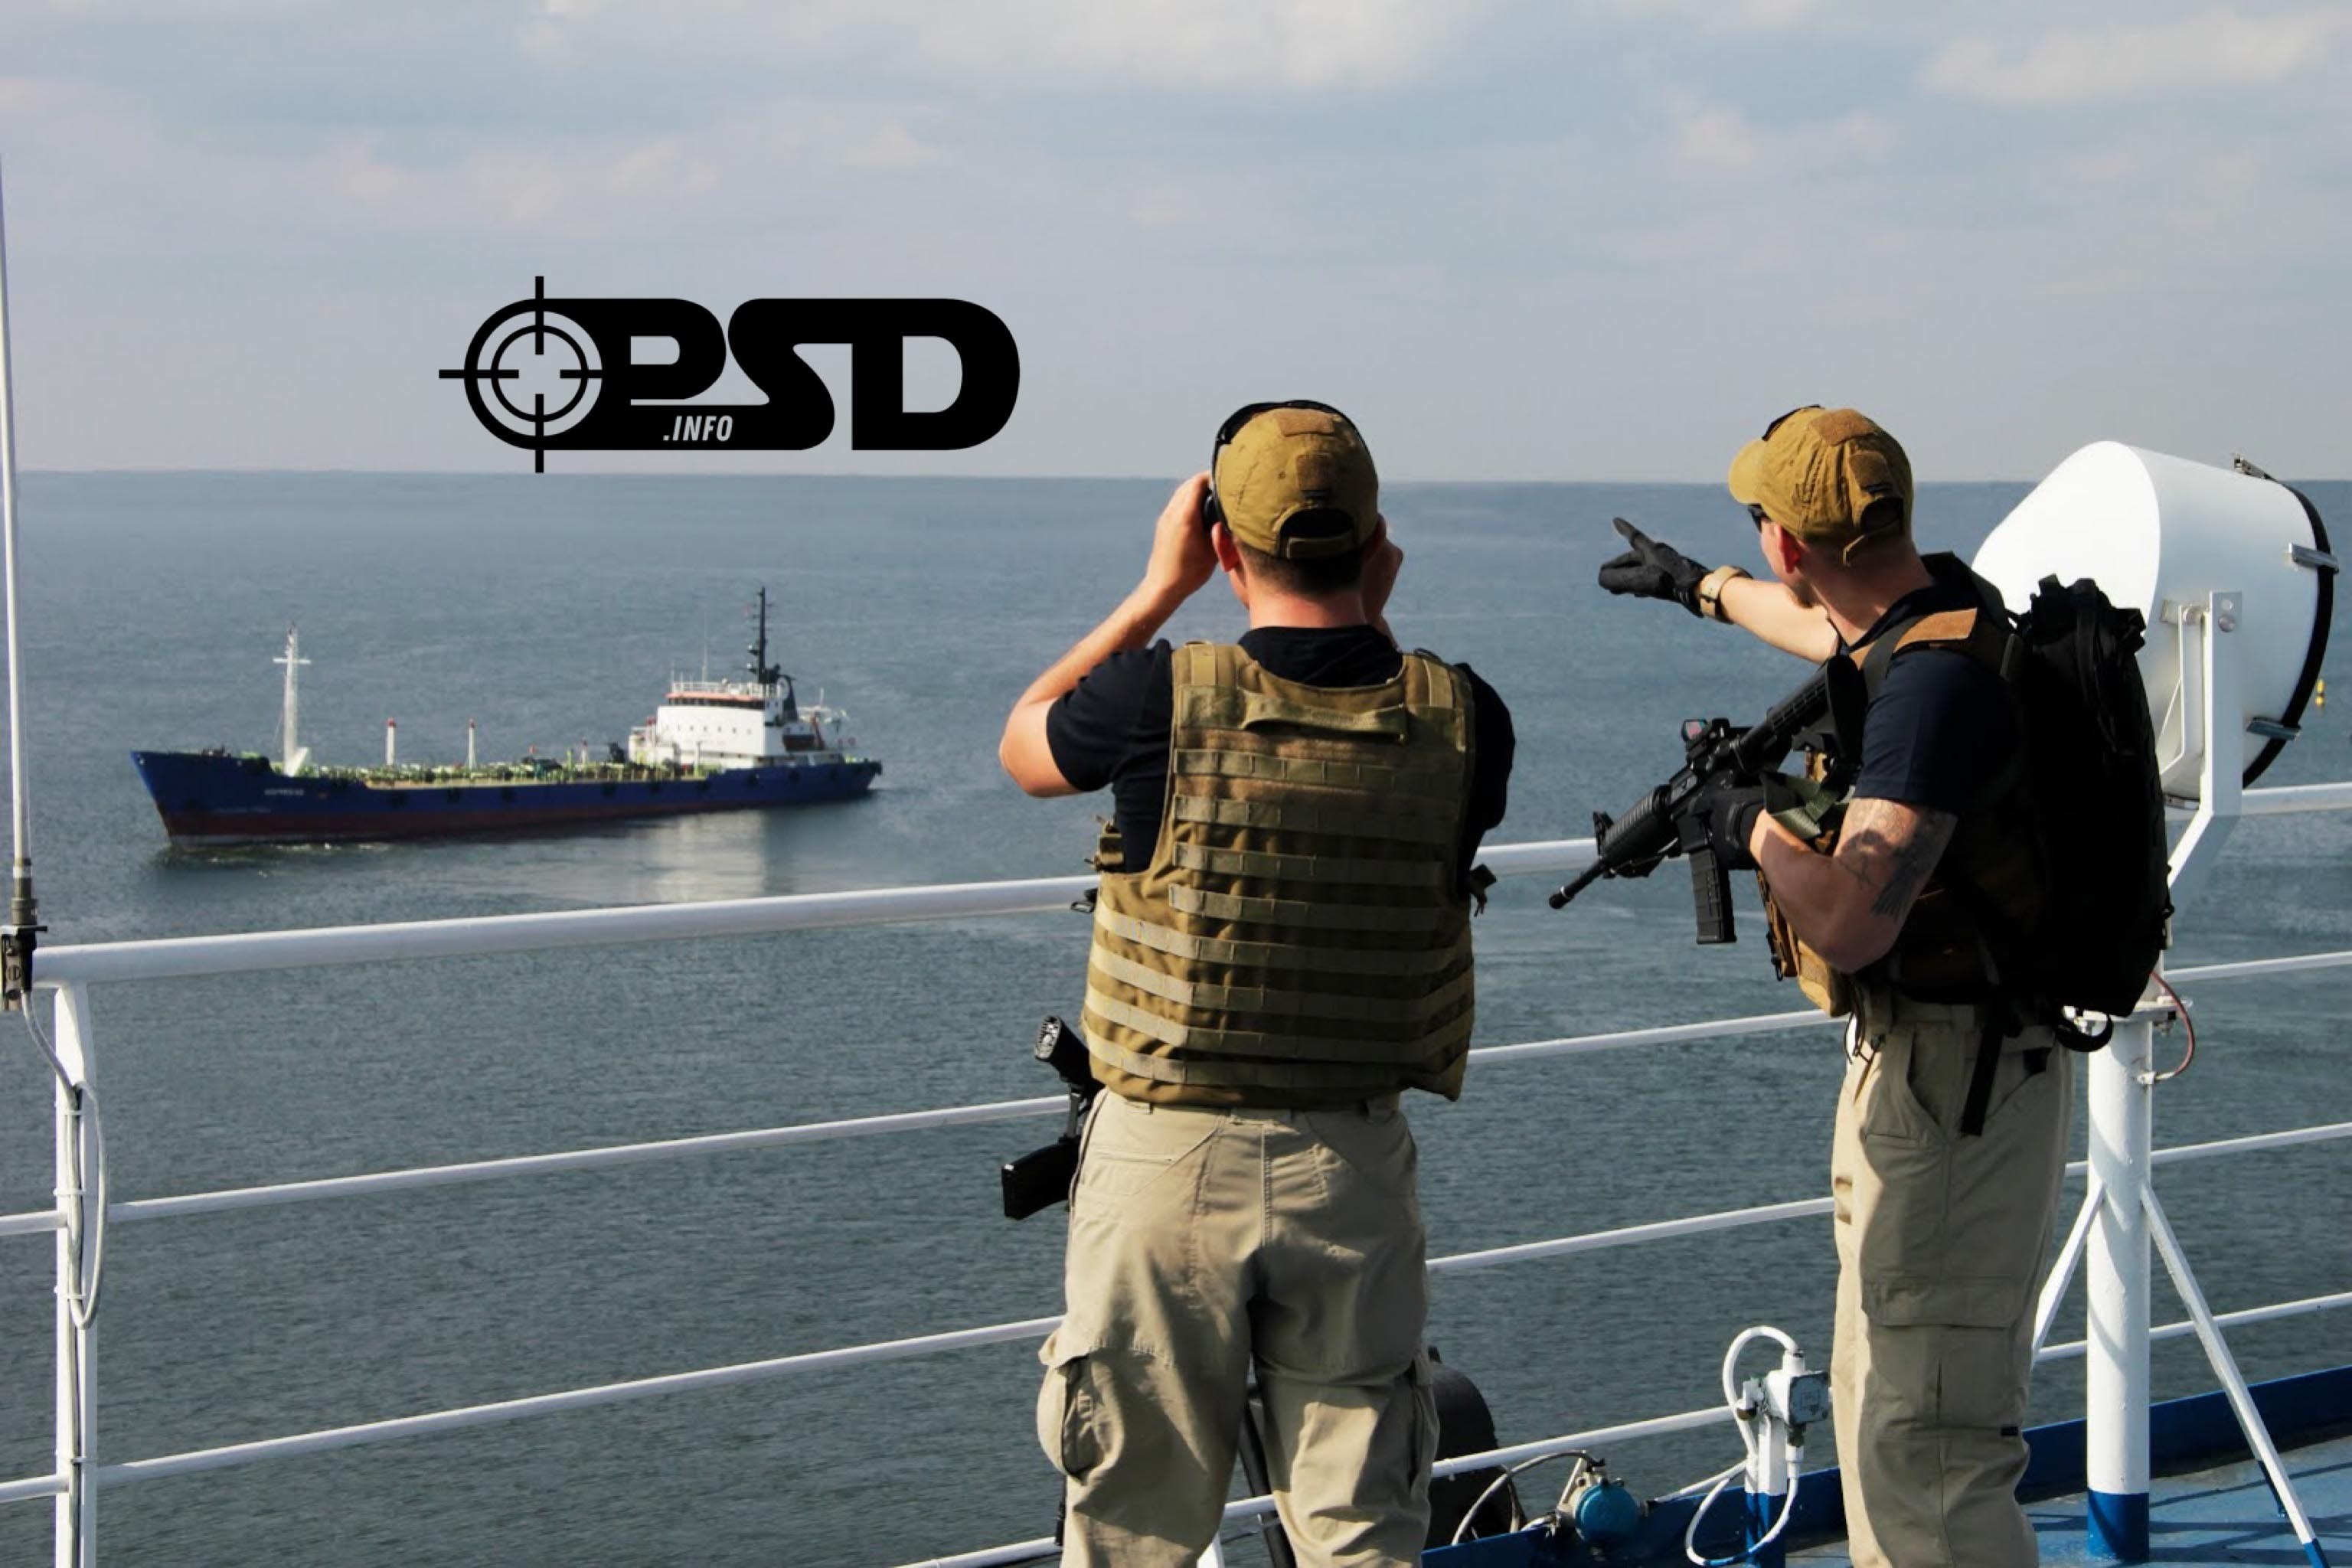 Морская безопасность рф. ЧВК охрана кораблей. Охрана моря. Охрана судна. Защита судов от пиратов.